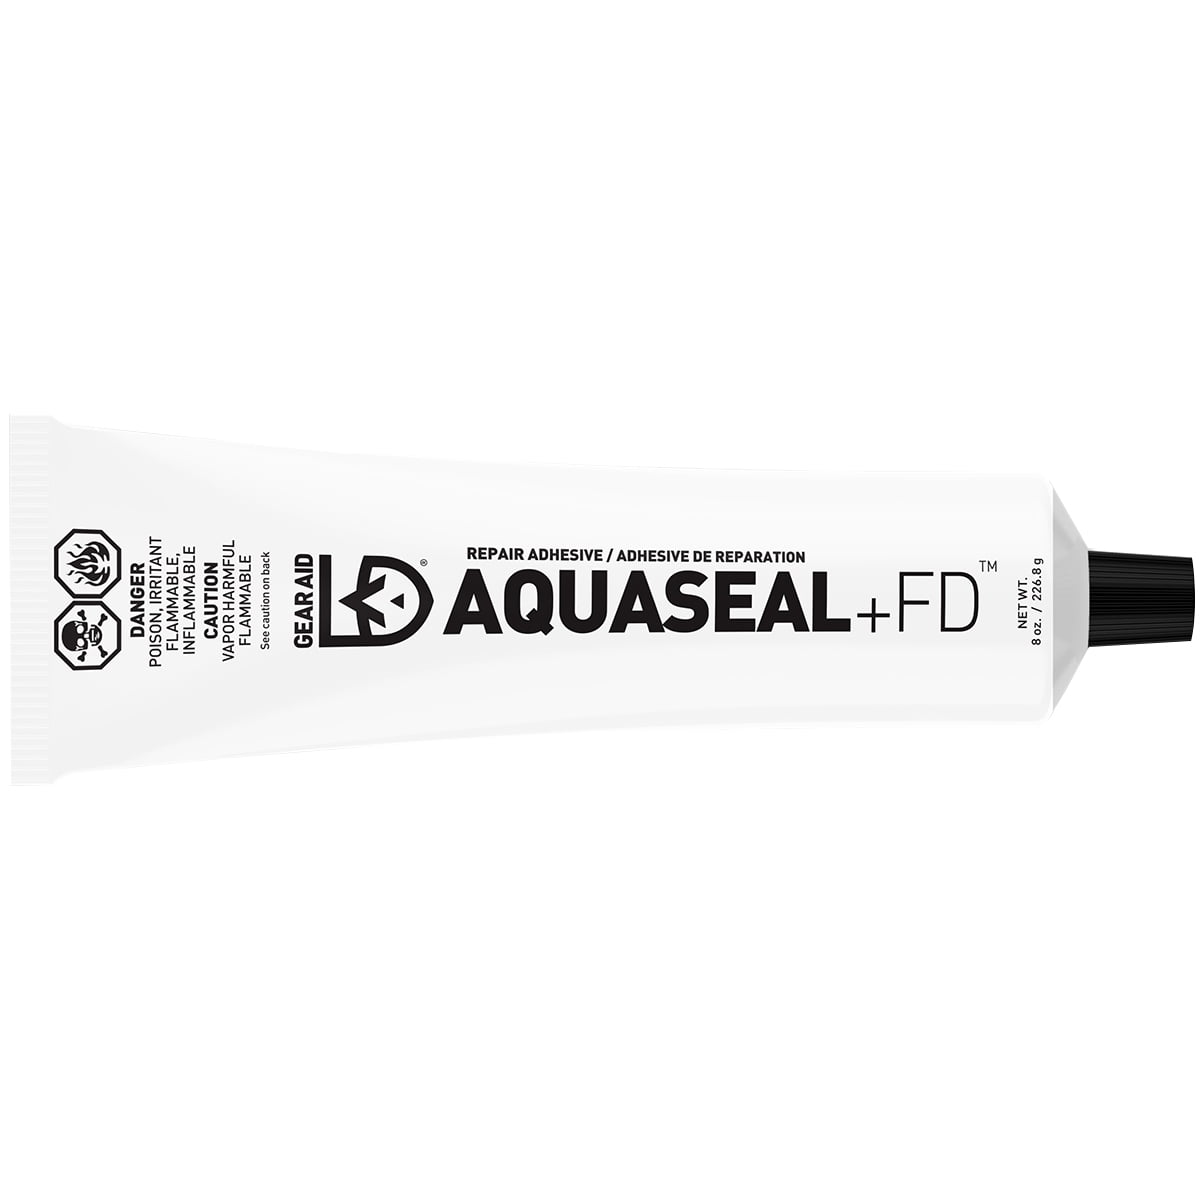 Gear Aid Aquaseal + FD Flexi Durable Repair Adhesive 3/4 oz - 10110